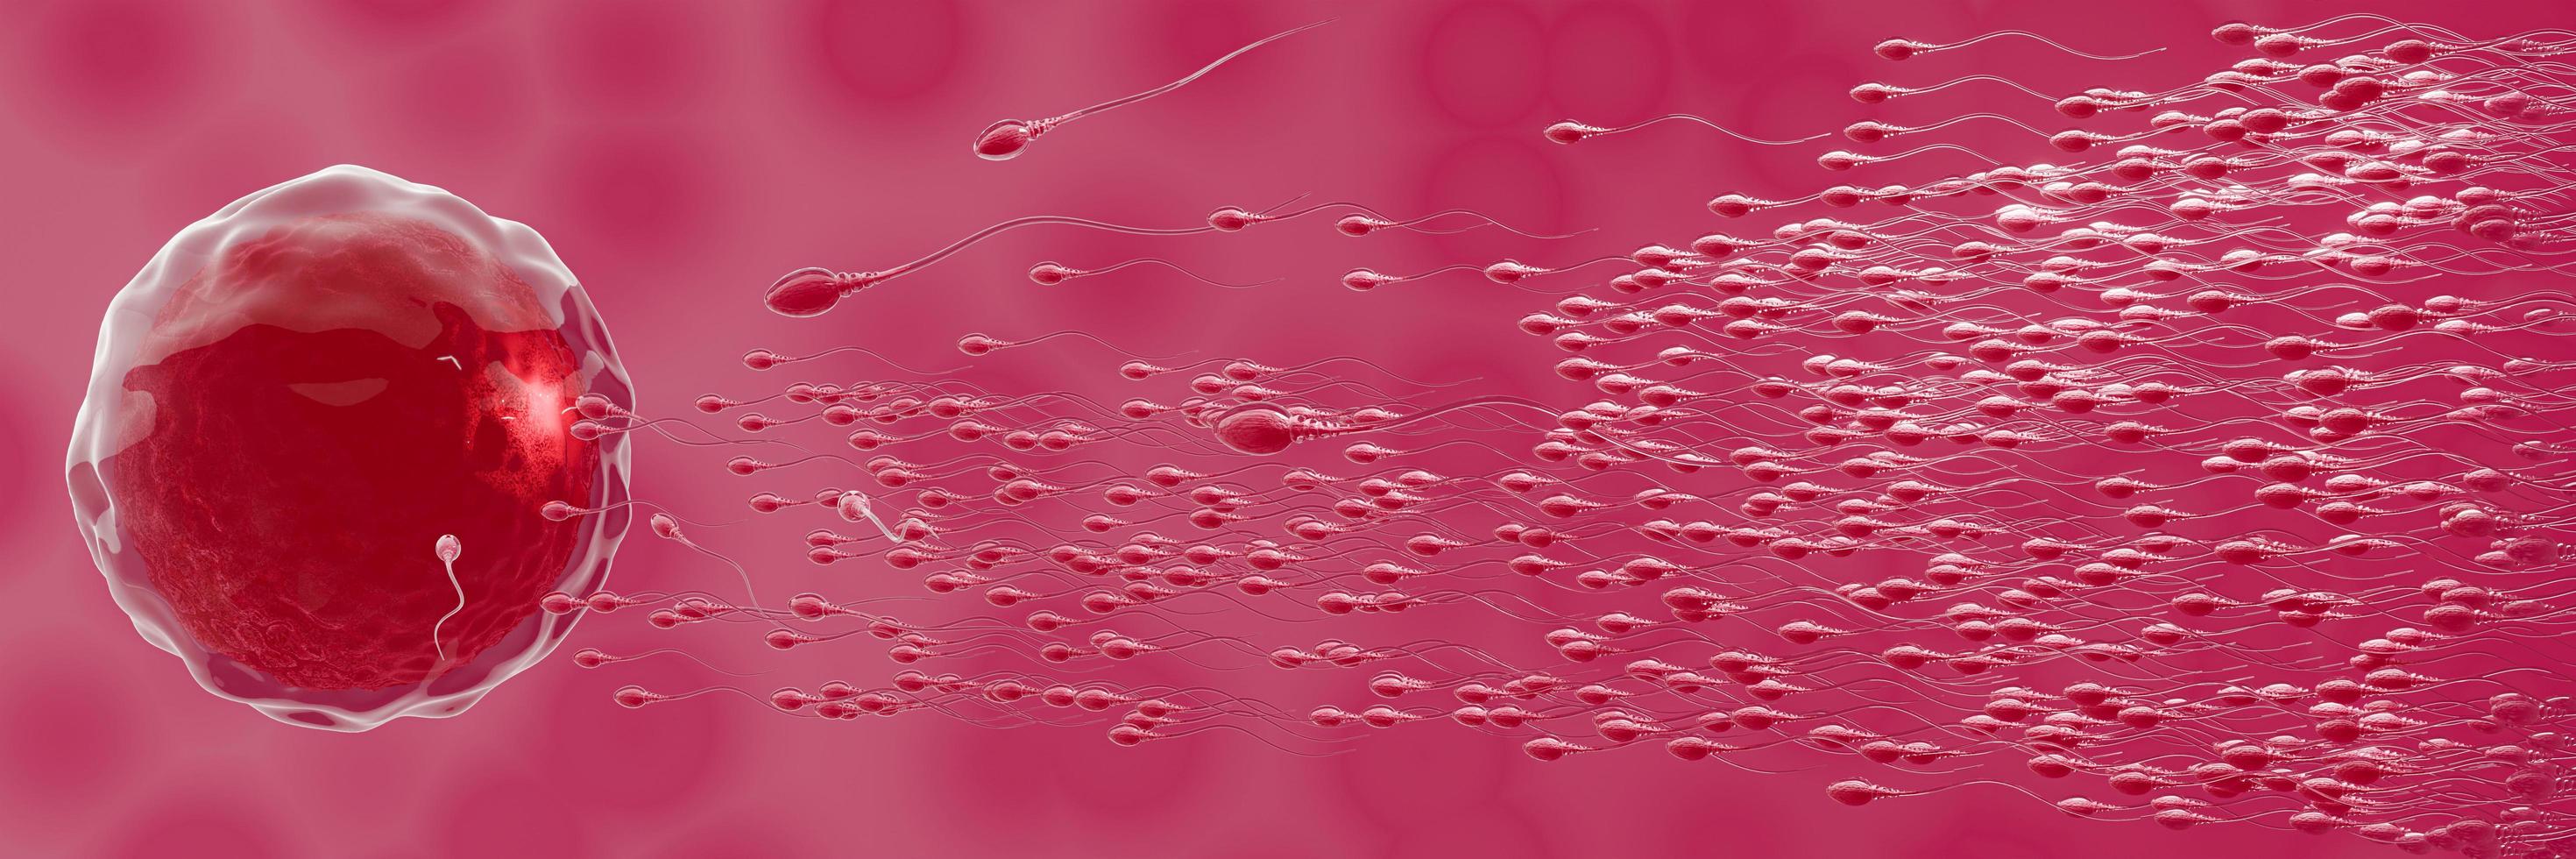 spermierna riktas mot ägget. att göra mänsklig parning. en förbefruktningsmodell mellan ett ägg och en spermie. 3d-rendering foto